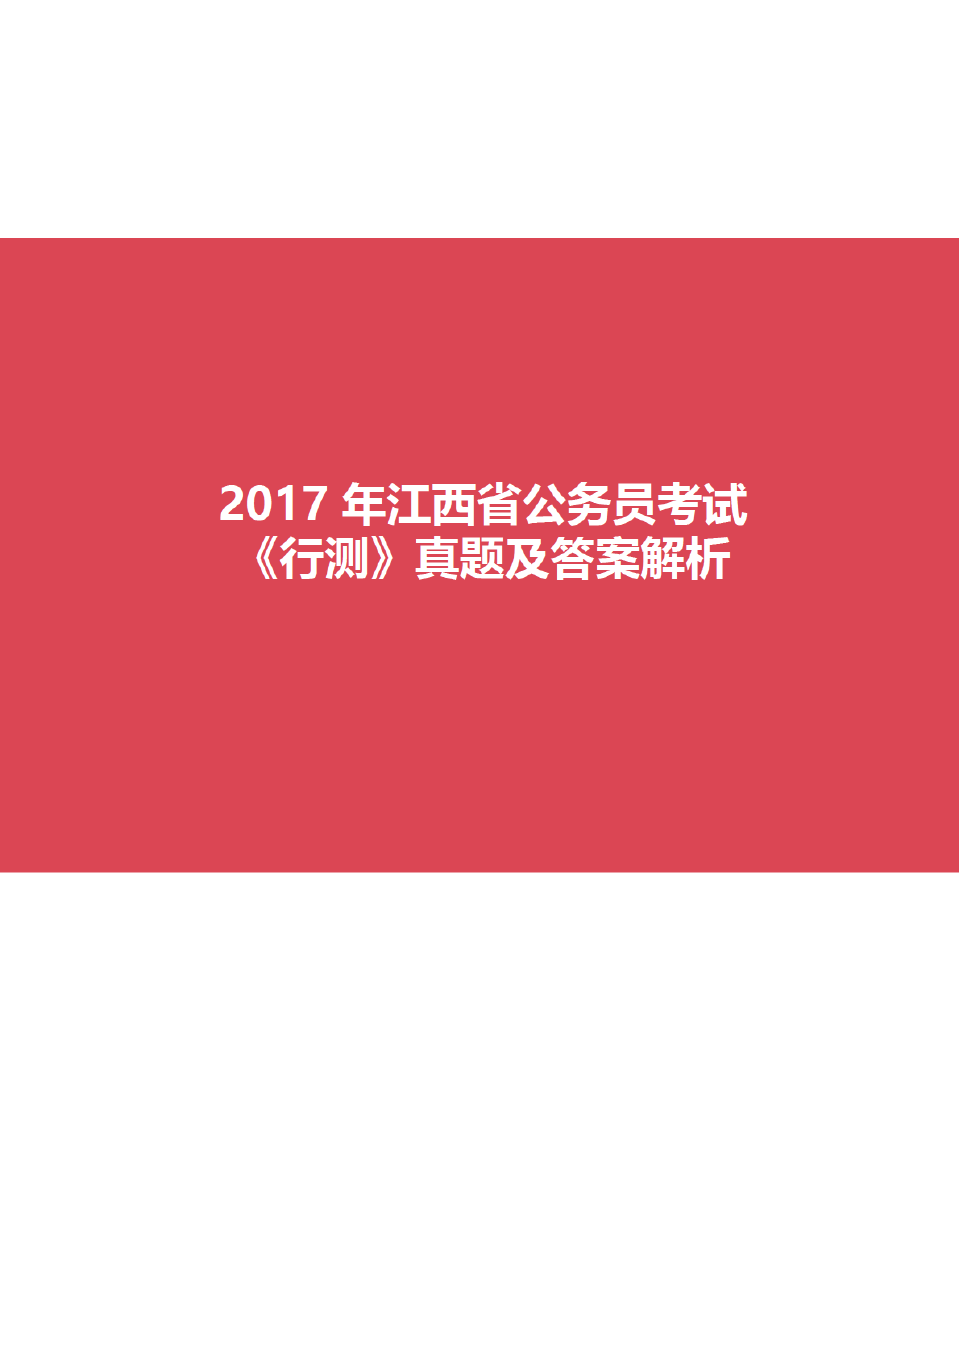 2017年江西省公务员考试《行测》真题试卷及答案解析